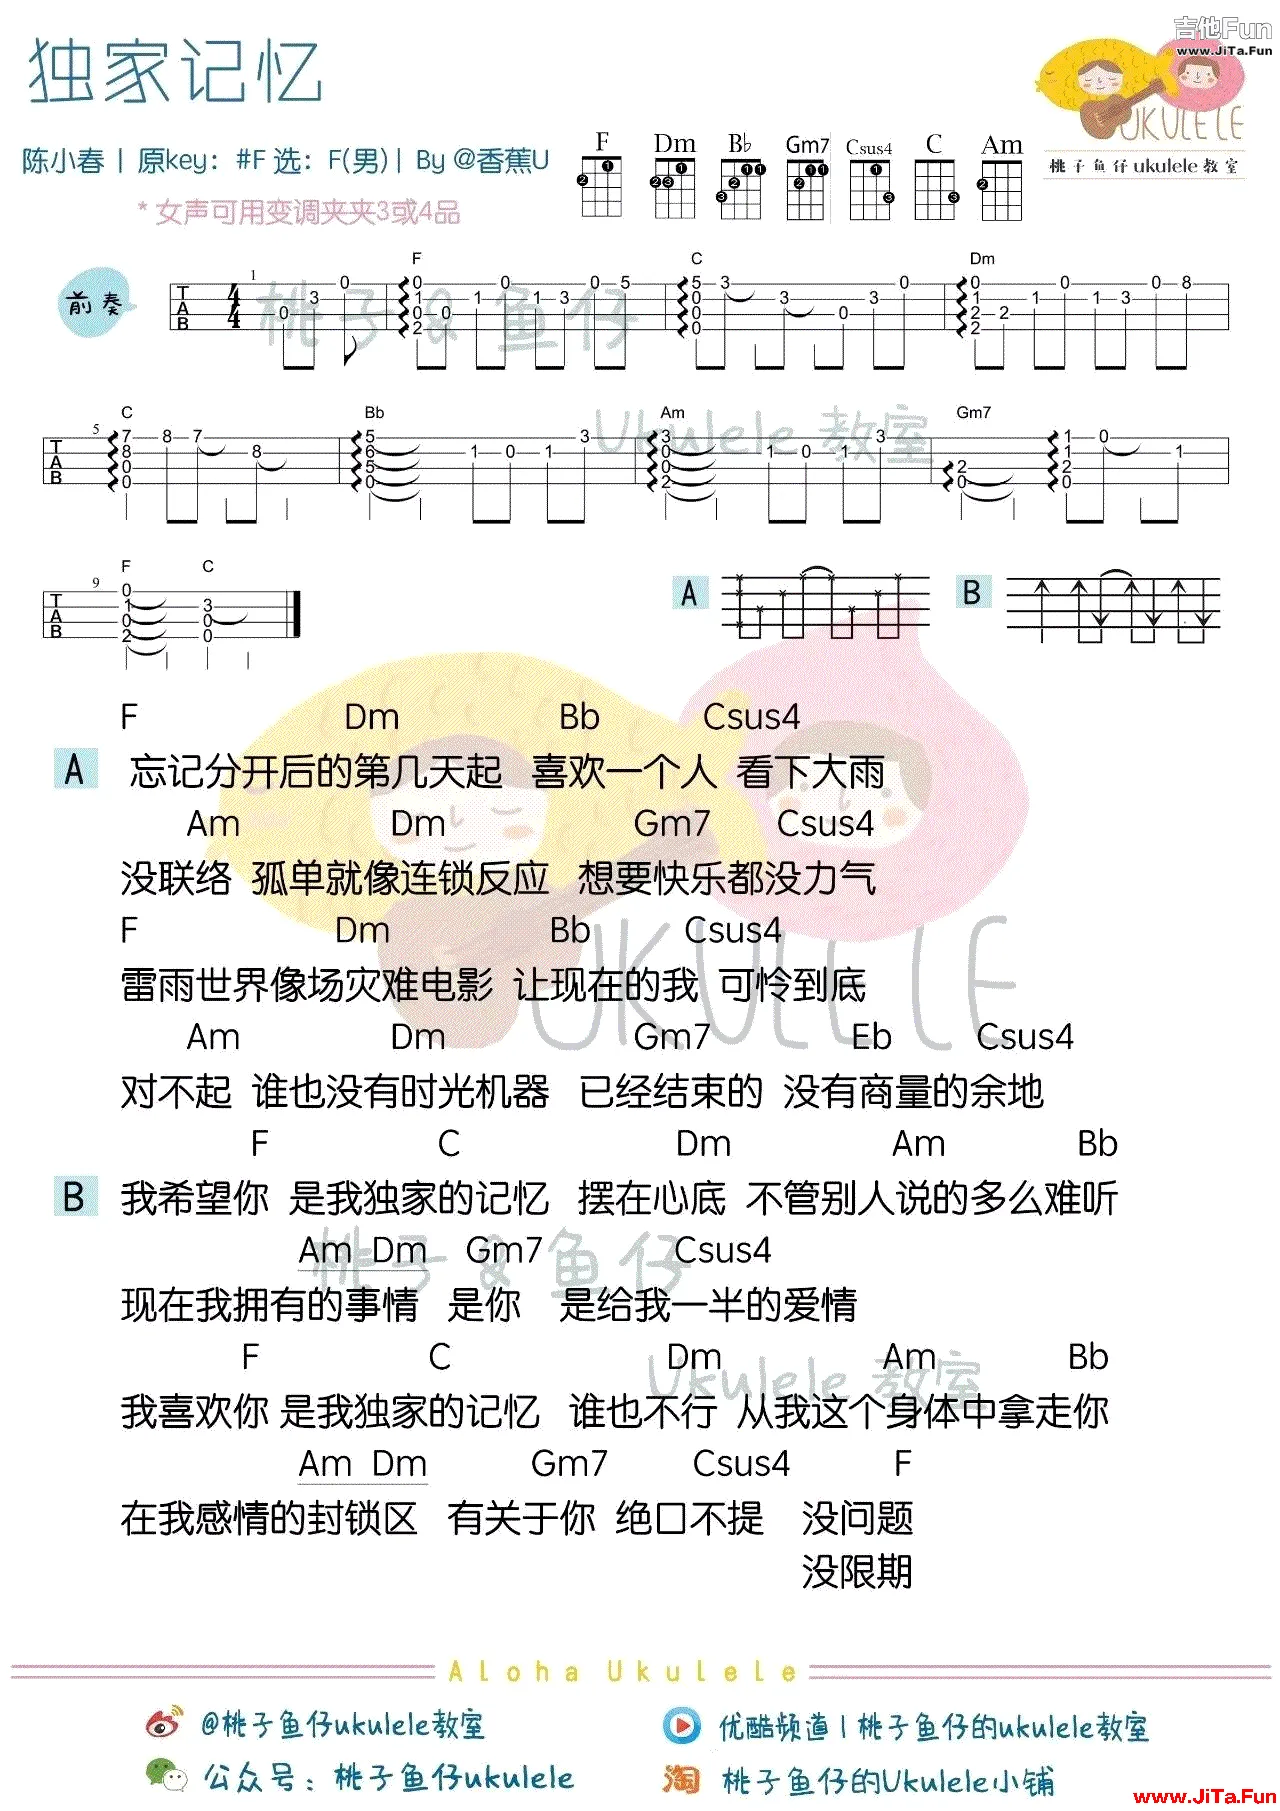 獨家記憶烏克麗麗譜 陳小春ukulele譜